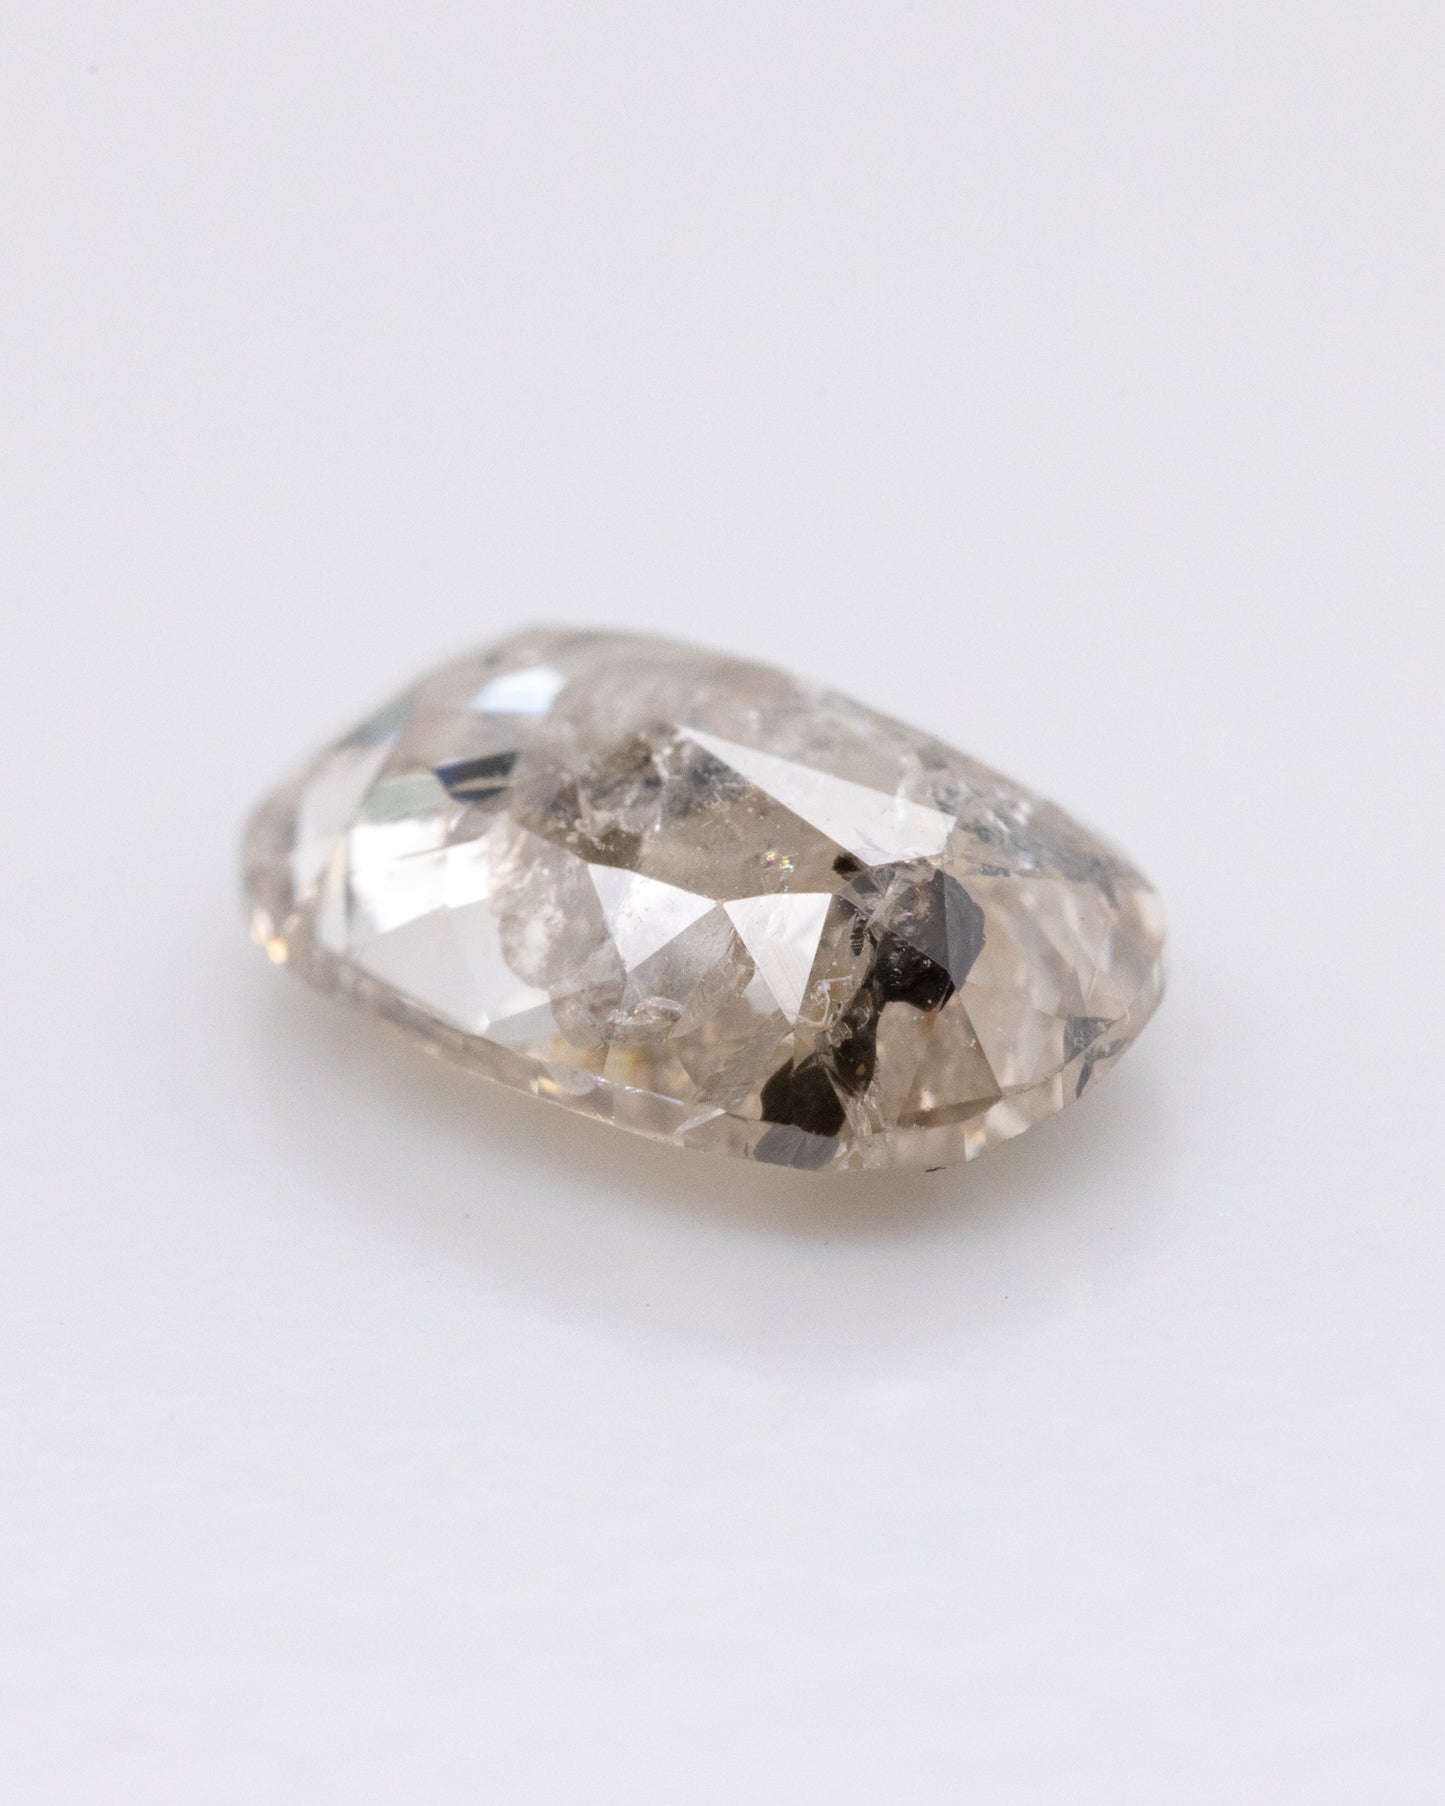 1.14ct Oval Shaped Loose Salt & Pepper Diamond